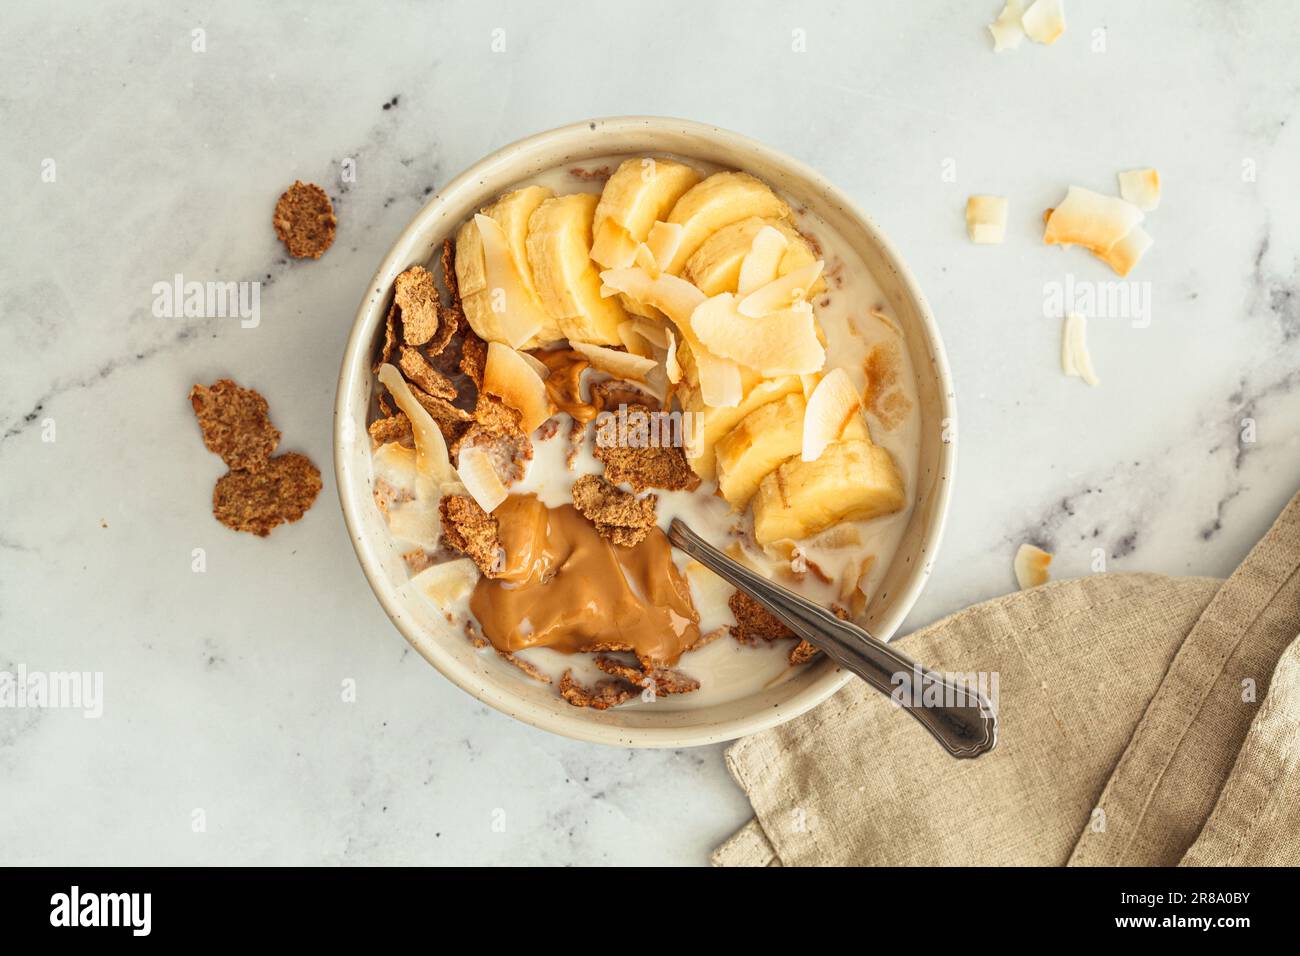 Fiocchi di grano intero con banana, fiche di cocco e burro di arachidi in una ciotola, sfondo bianco, vista dall'alto. Concetto di colazione sana. Foto Stock